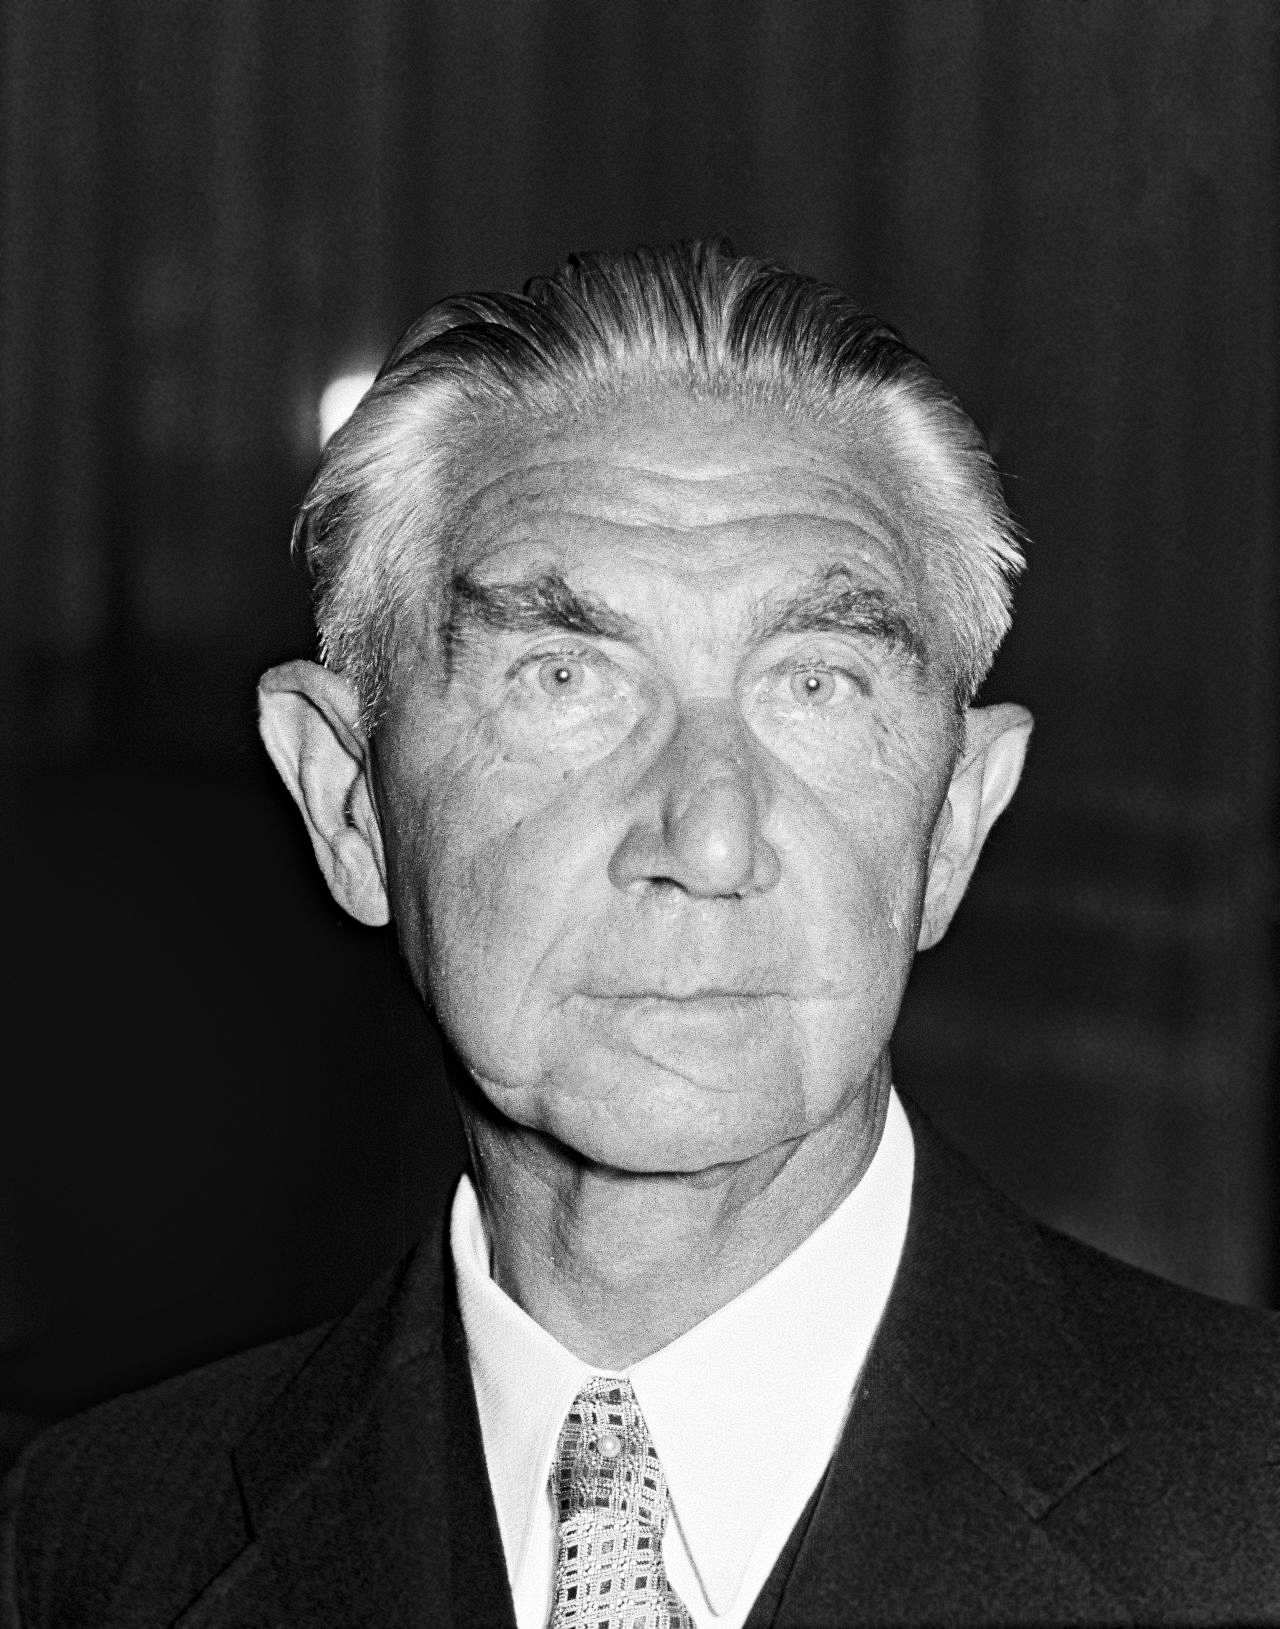 Porträtfotografie von Hermann Höpker-Aschoff, erster Präsident des Bundesverfassungsgerichts (1951-1954).